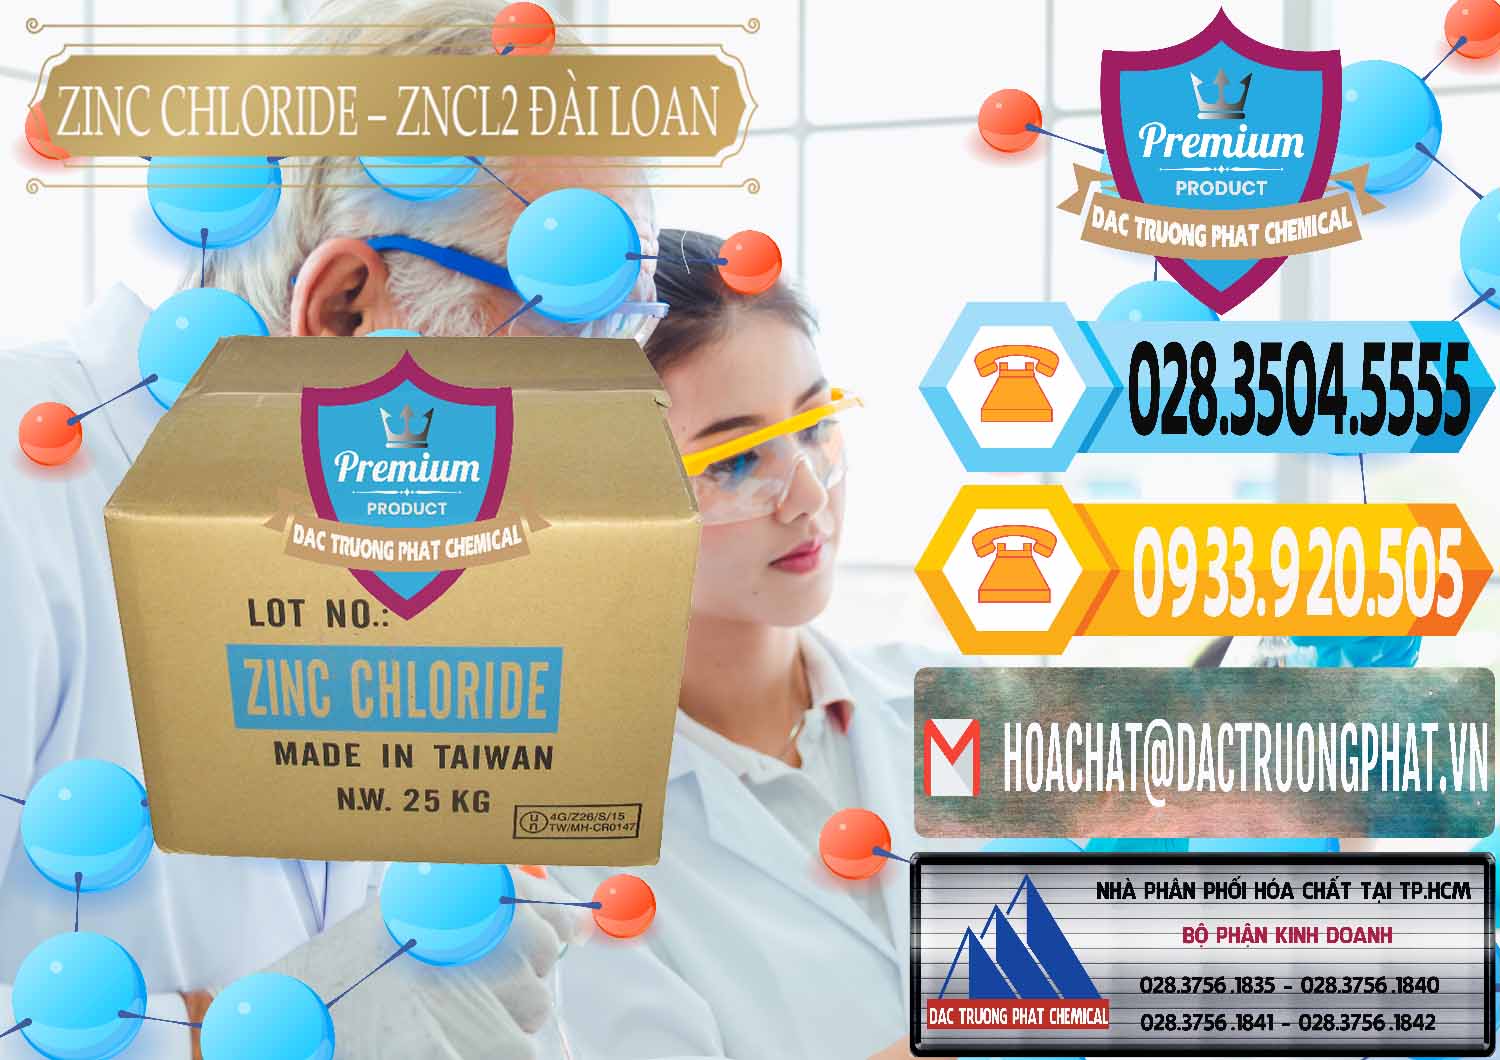 Nơi chuyên kinh doanh & bán Zinc Chloride - ZNCL2 96% Đài Loan Taiwan - 0178 - Đơn vị chuyên phân phối ( nhập khẩu ) hóa chất tại TP.HCM - hoachattayrua.net